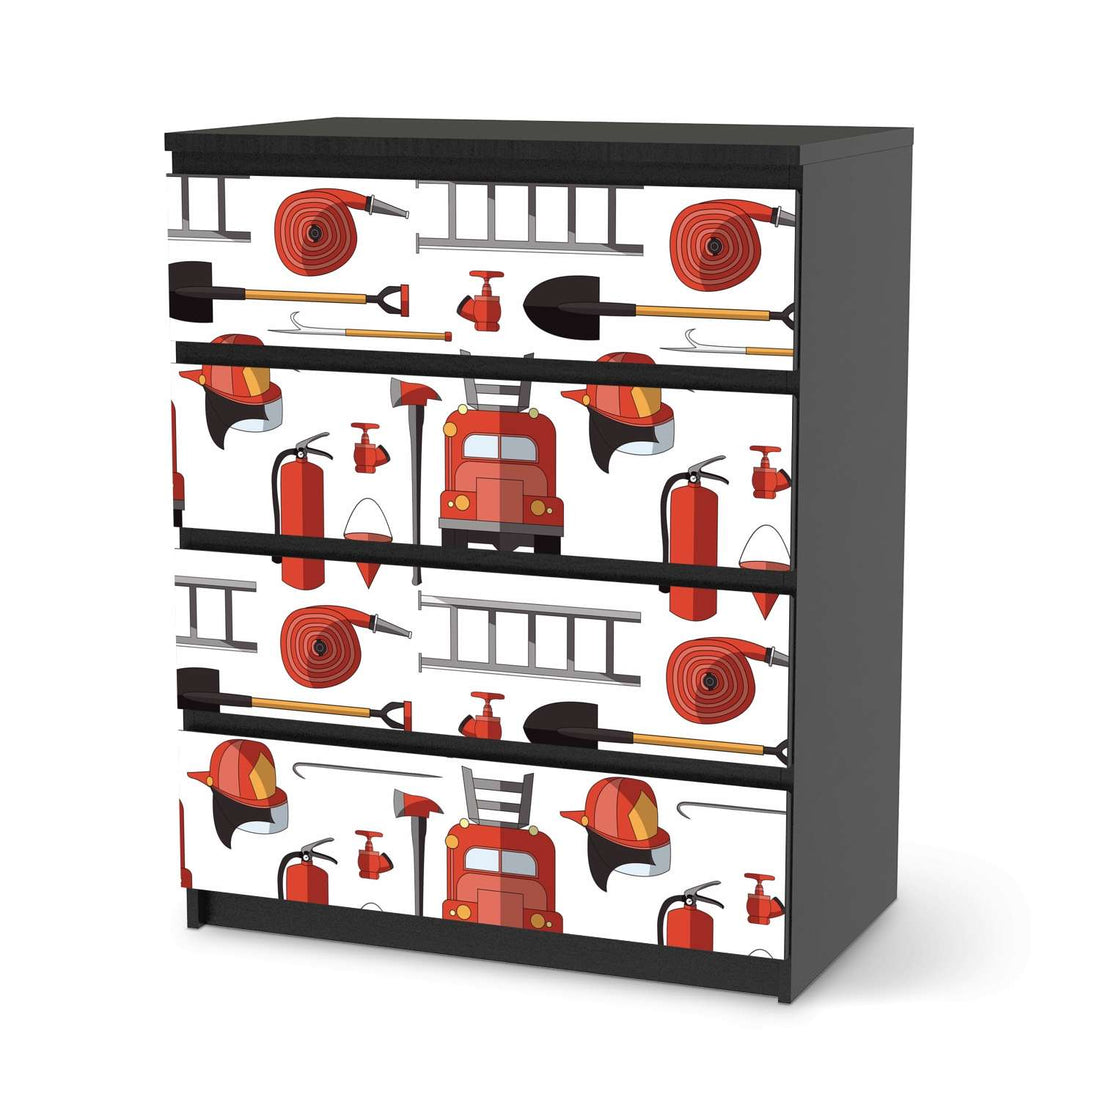 Folie für Möbel Firefighter - IKEA Malm Kommode 4 Schubladen - schwarz